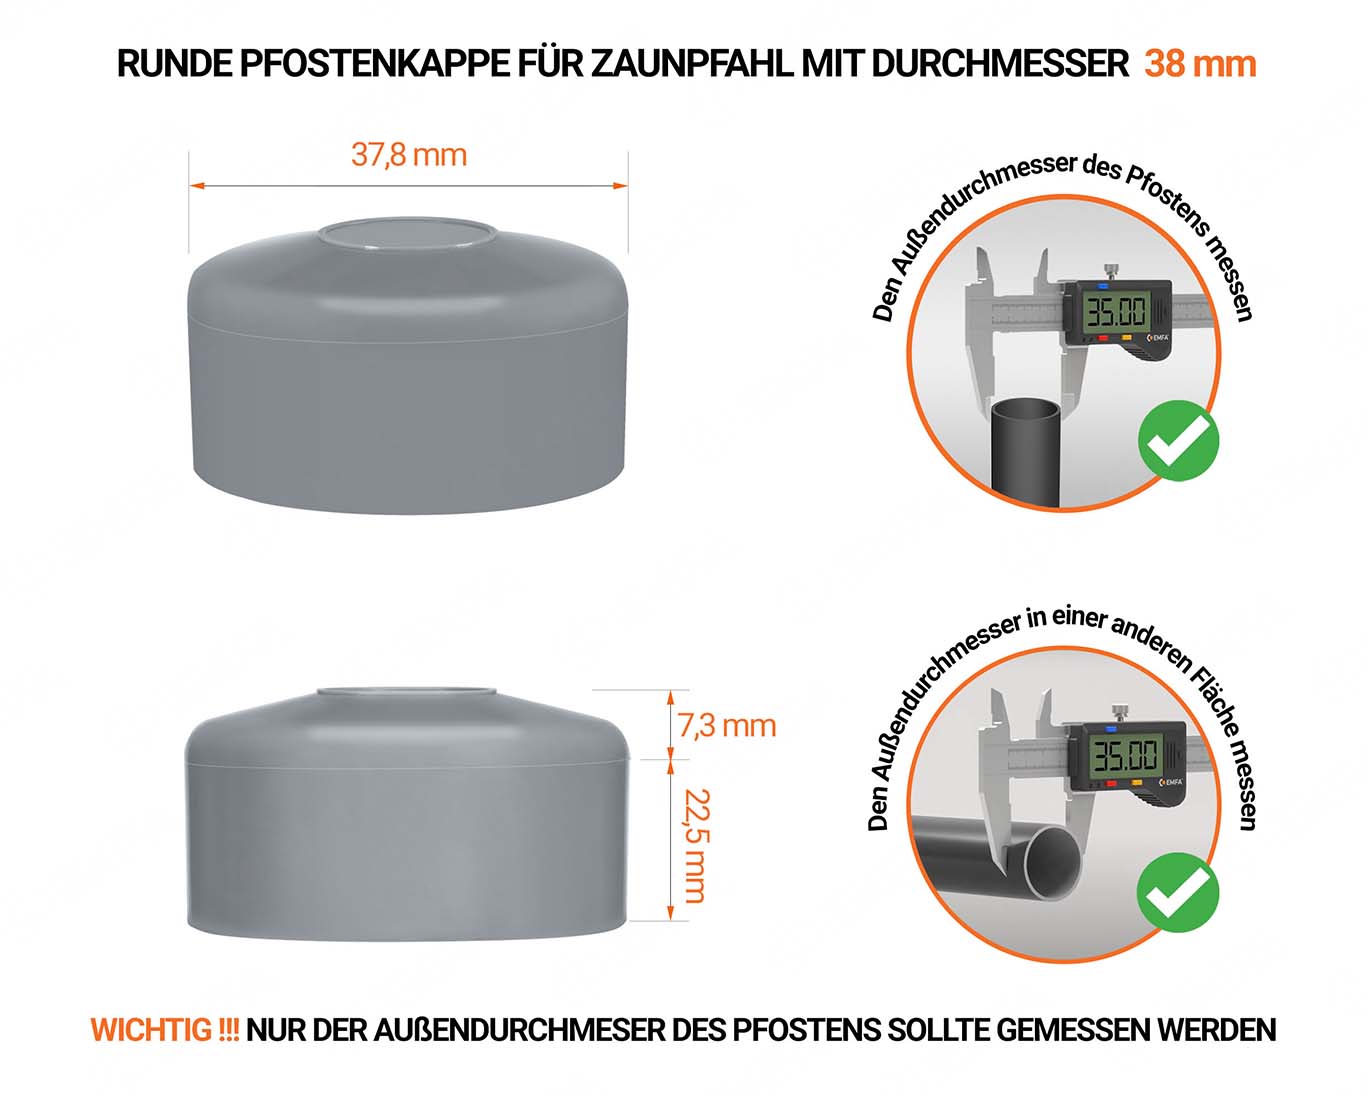 Graue Pfostenkappen rund für Pfostendurchmesser  38 mm mit technischen Abmessungen und Anleitung für korrekte Messung